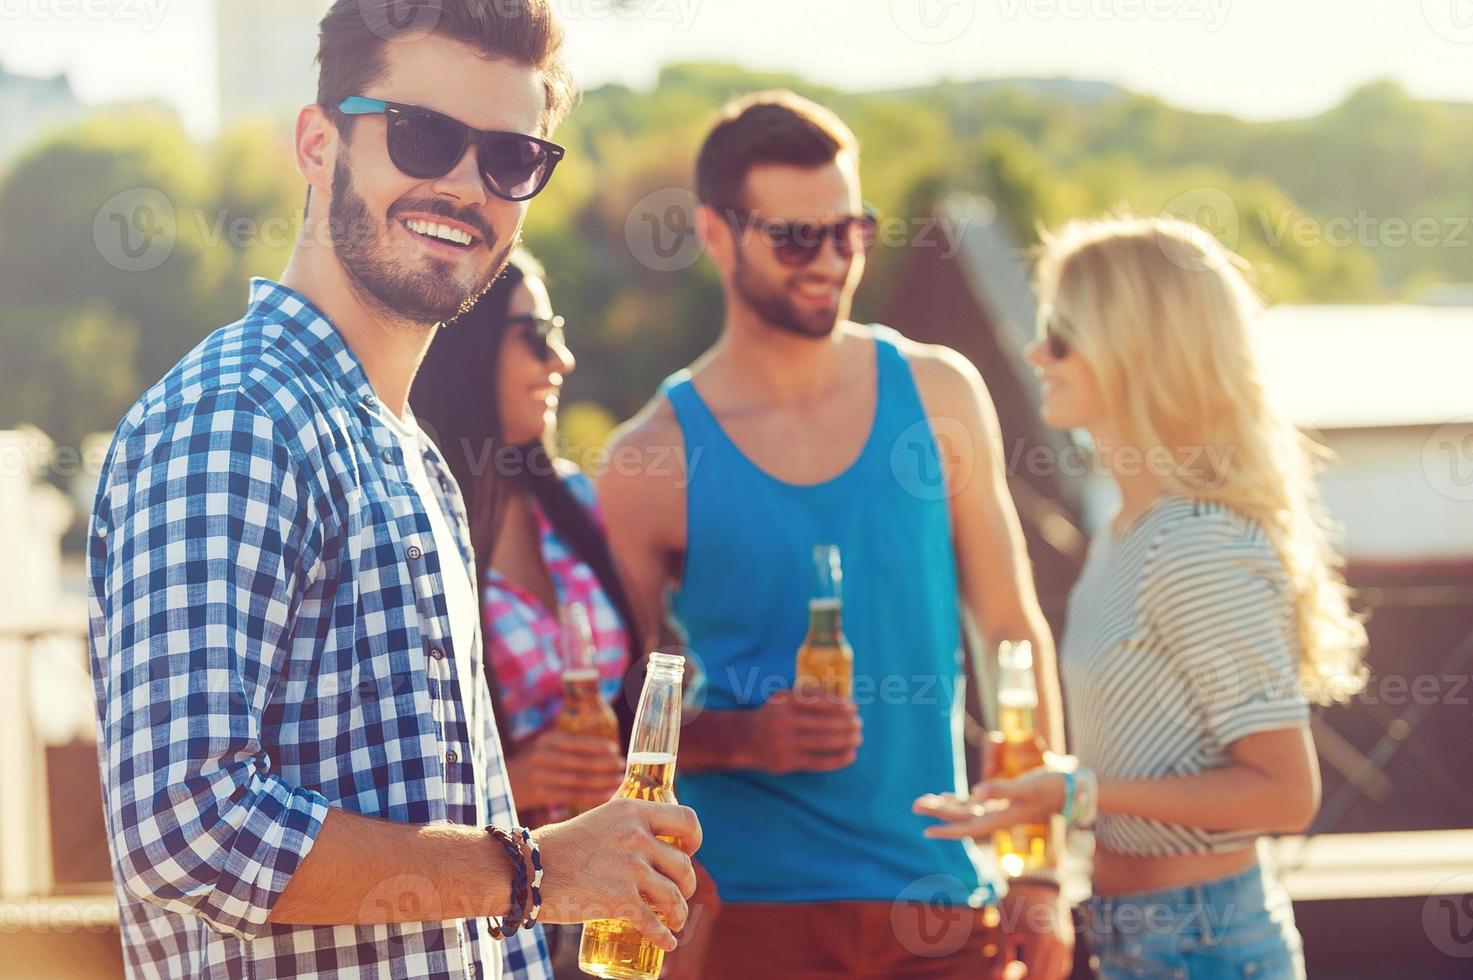 boire de la bière avec des amis. heureux jeune homme tenant une bouteille de bière et regardant la caméra tandis que trois personnes se parlent en arrière-plan photo